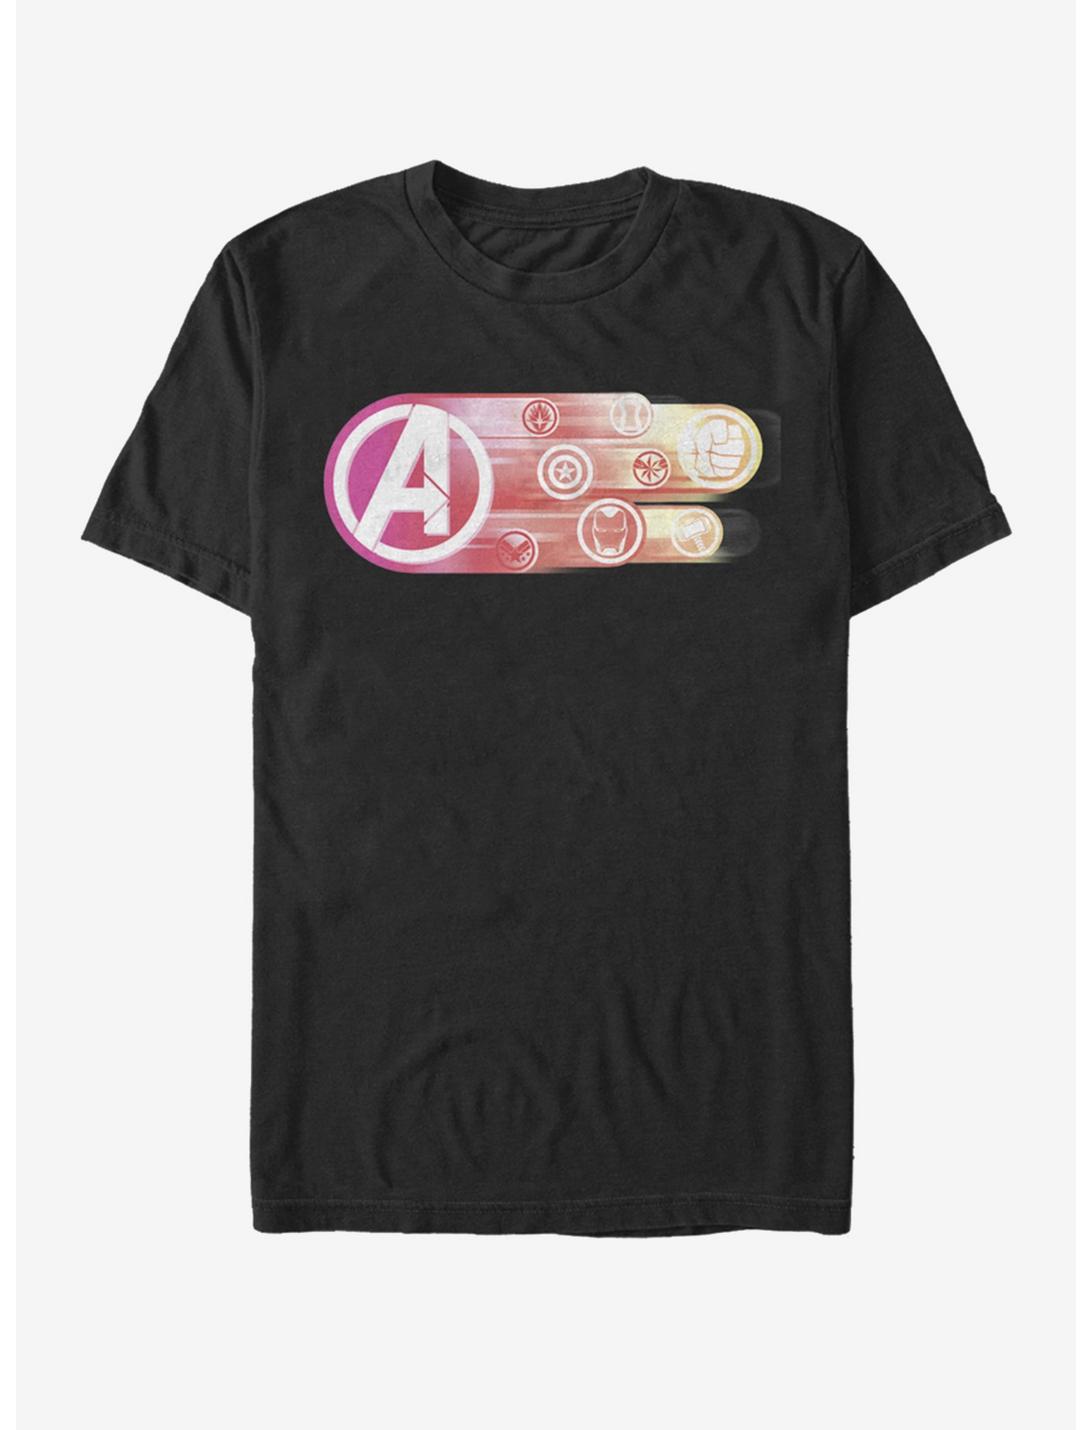 Marvel Avengers: Endgame Endgame Icons group T-Shirt, BLACK, hi-res